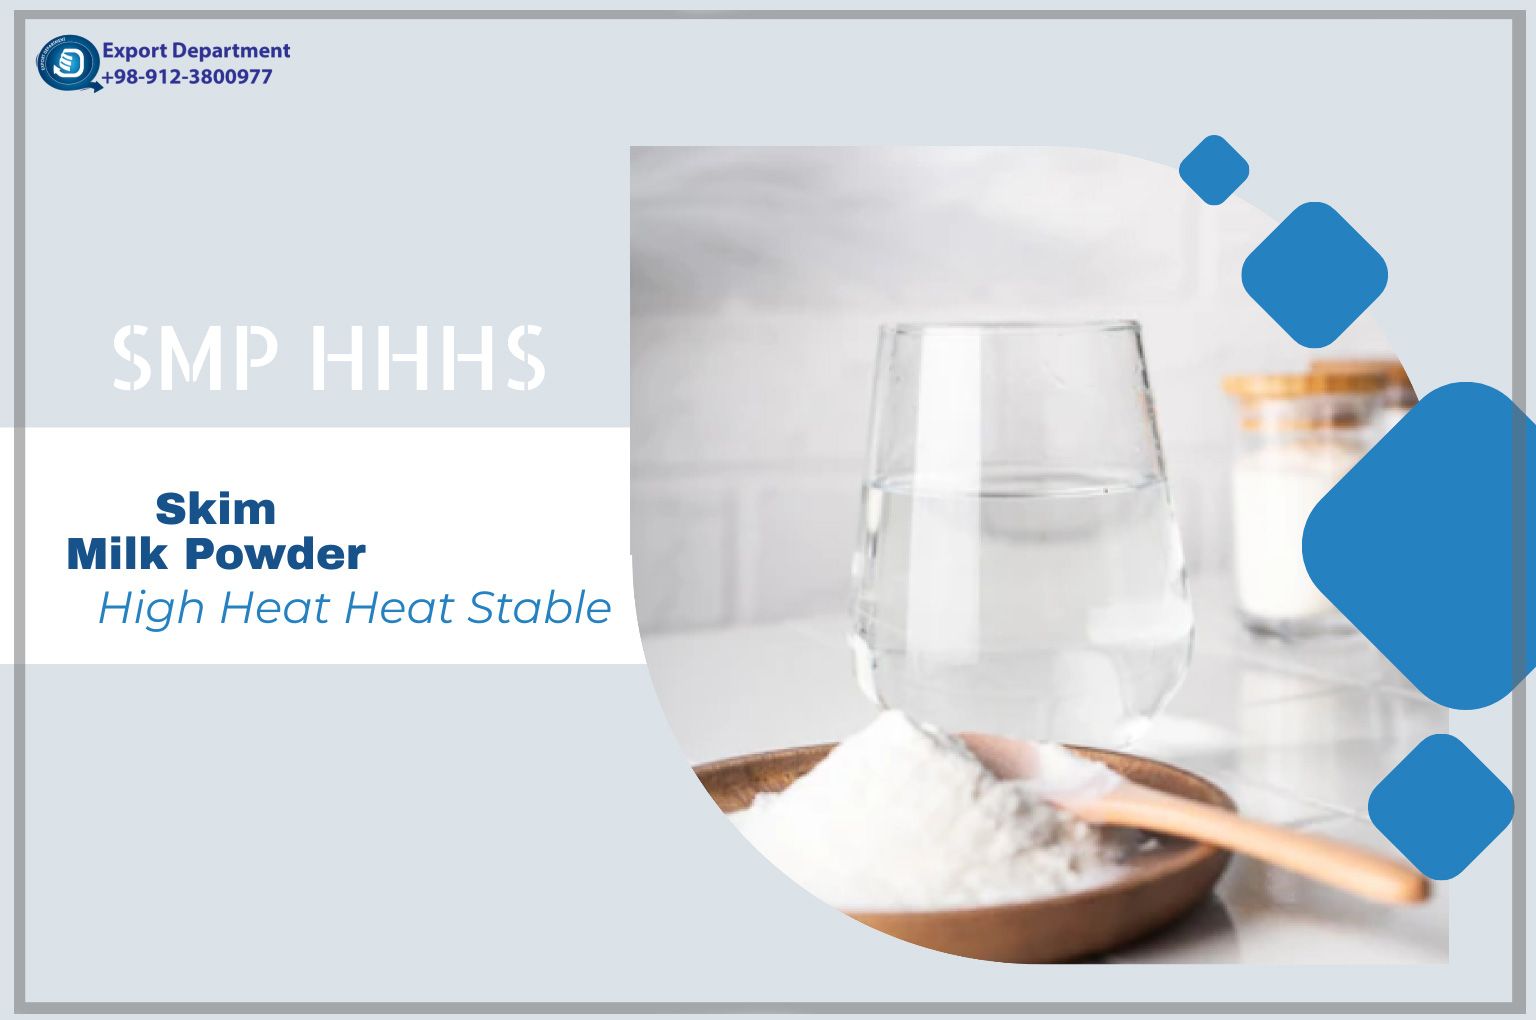 руководство по Сухое обезжиренное молоко с высокой термостойкостью (SMP HHHS)